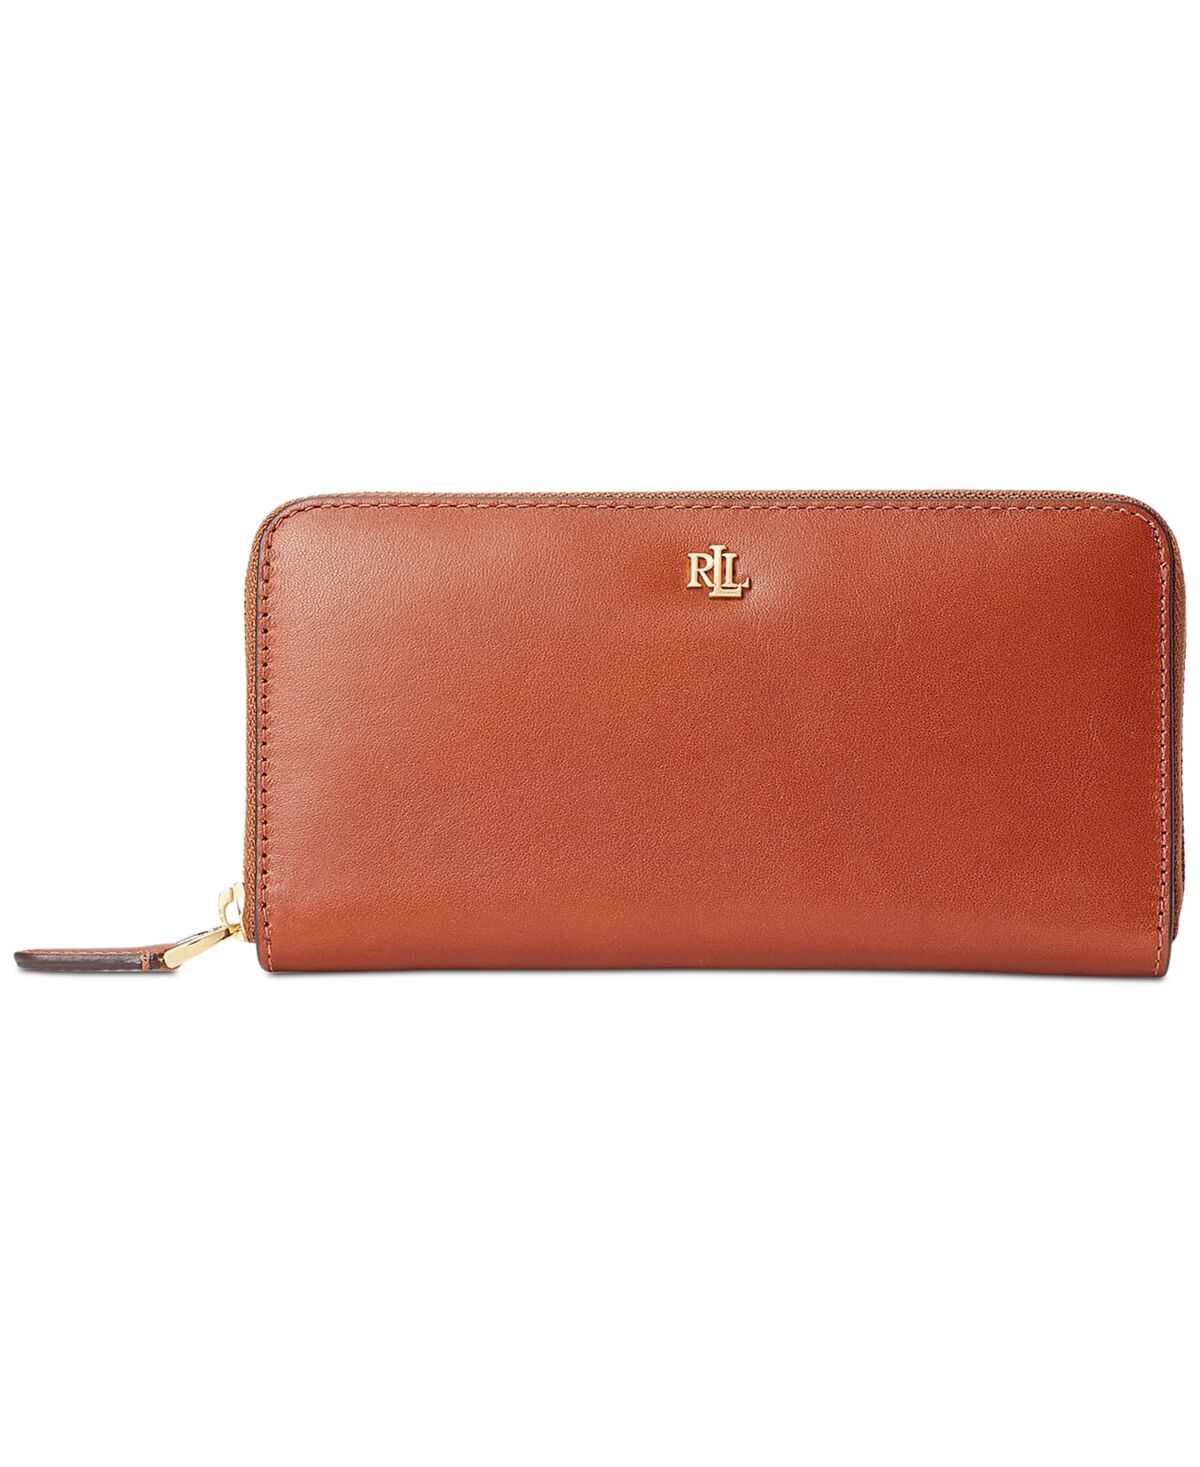 Ralph Lauren Women's Full-Grain Leather Large Zip Continental Wallet - Lauren Tan